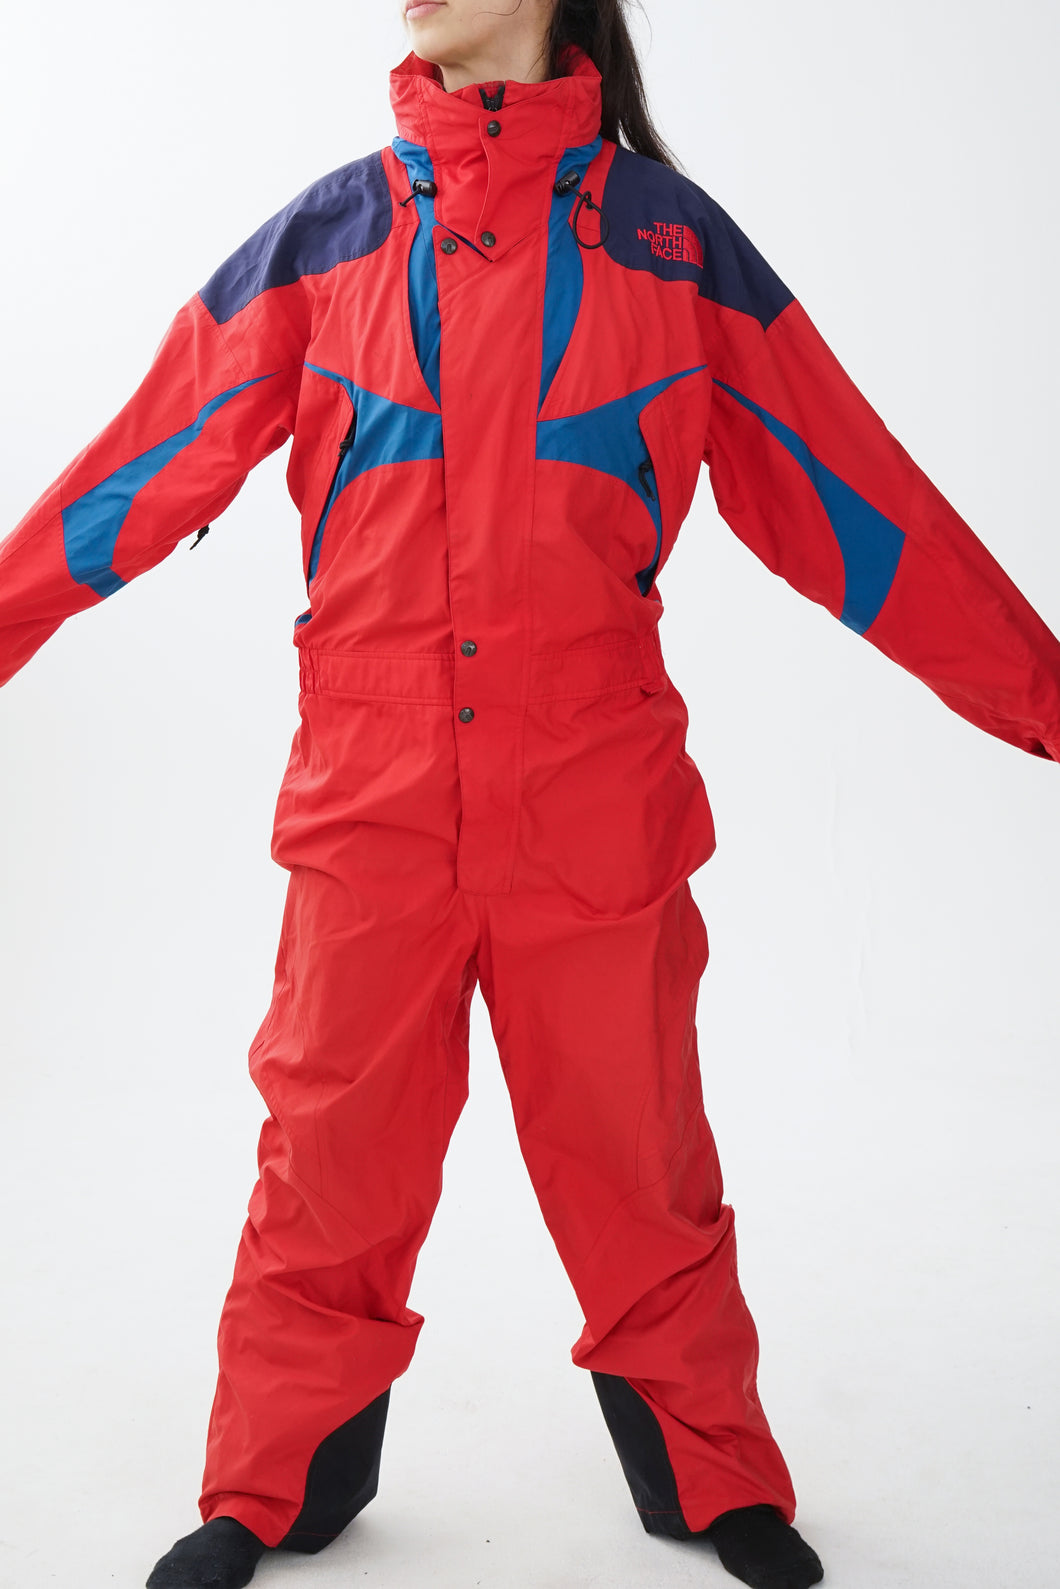 One piece North Face ski suit hardshell, snow suit rouge et bleu pour homme taille M